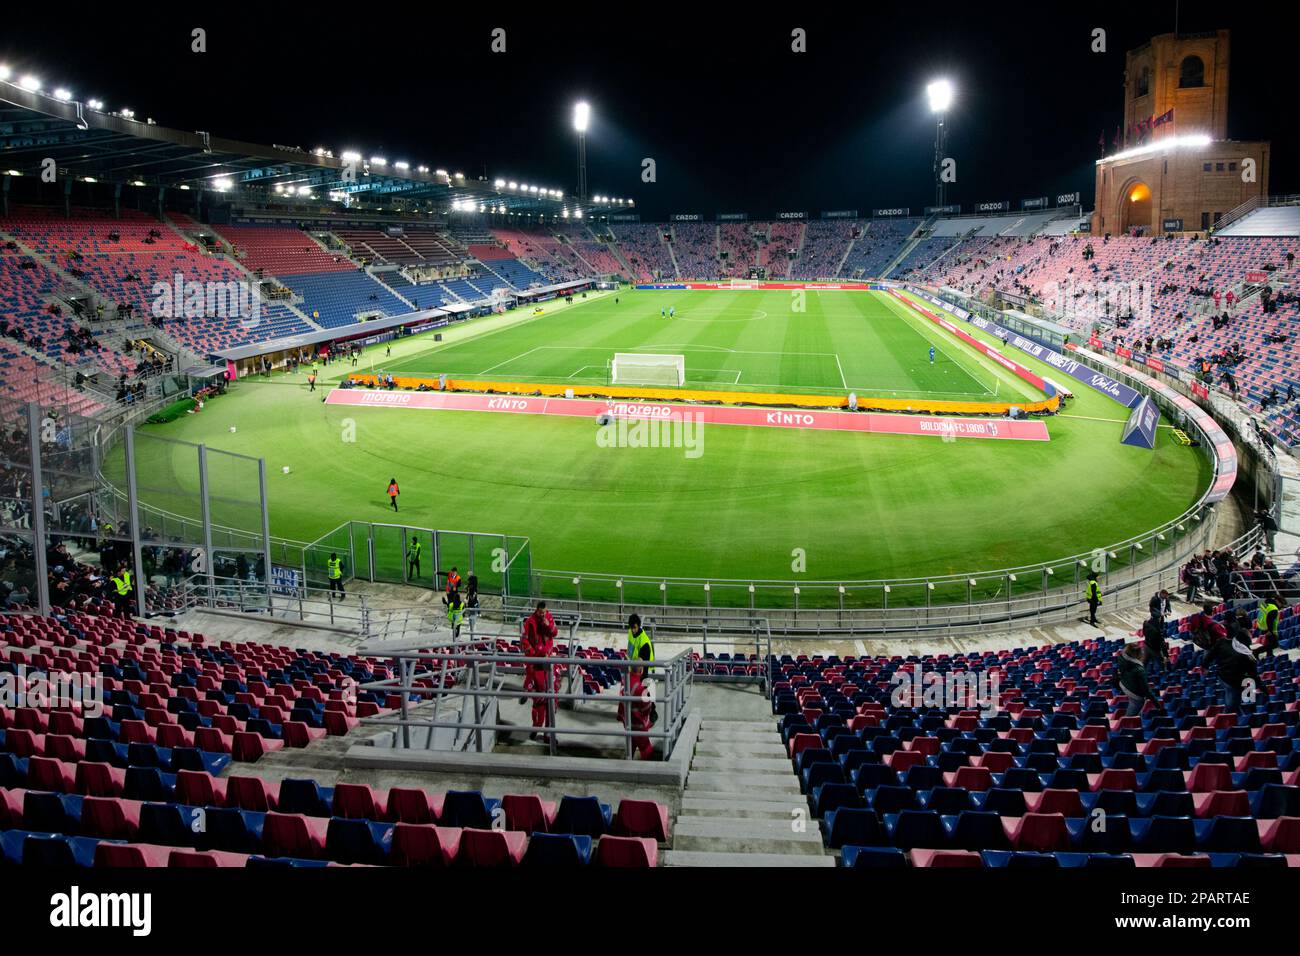 Stadio Renato Dall'Ara - O que saber antes de ir (ATUALIZADO 2023)